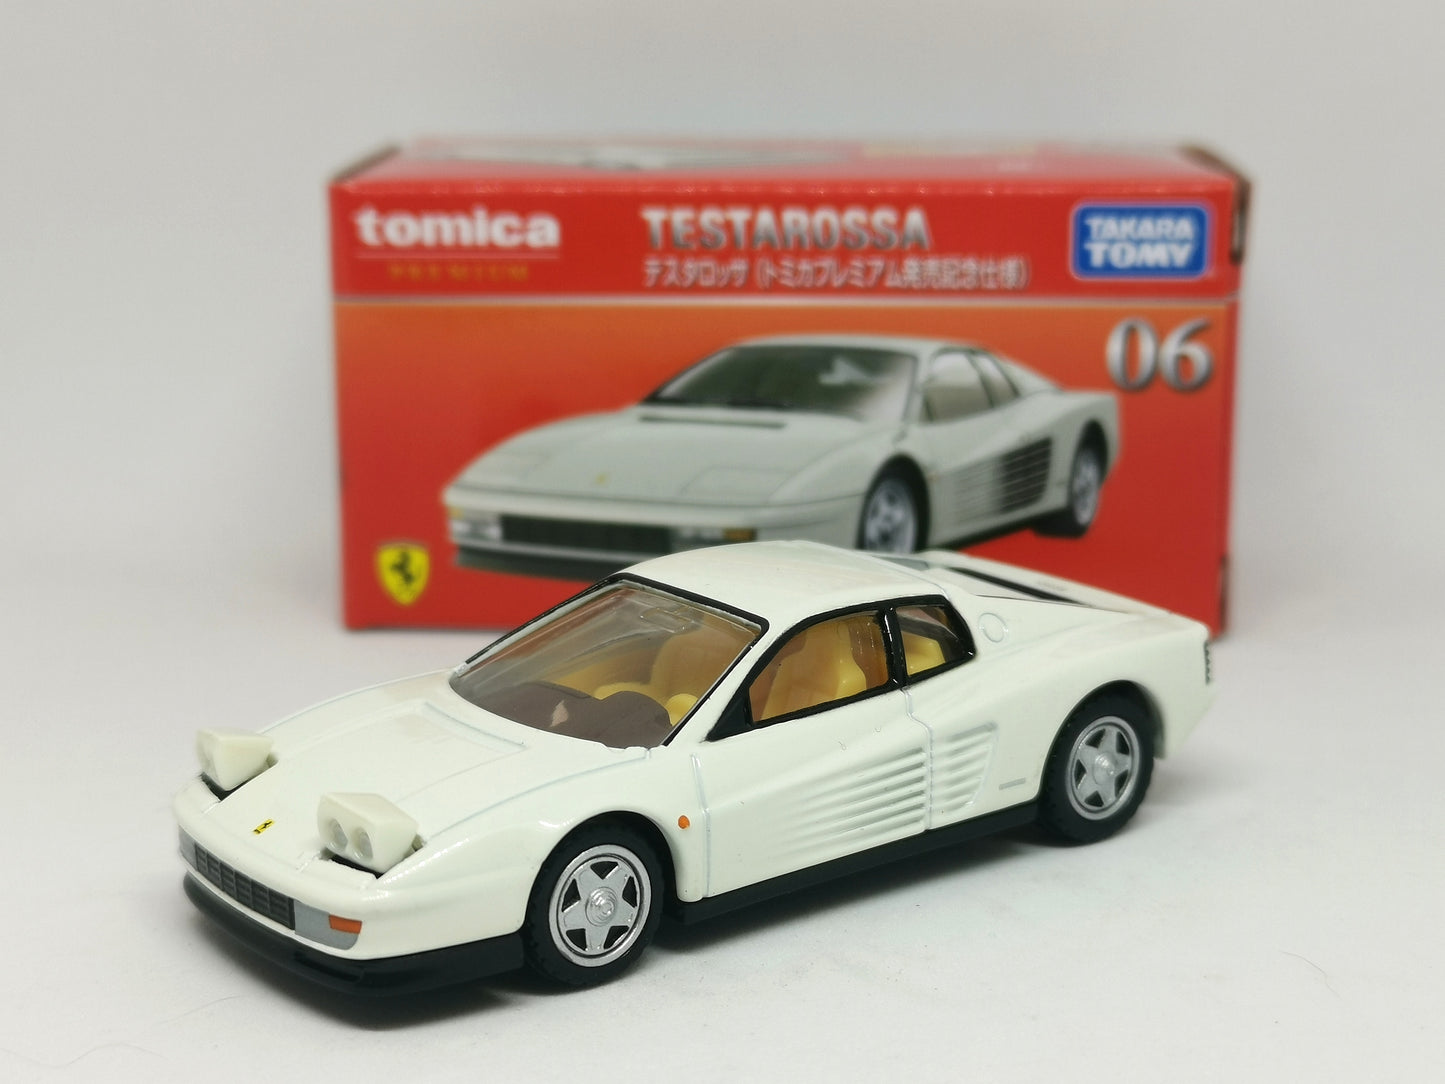 Unspun Tomica Premium #06 Ferrari Testarossa White